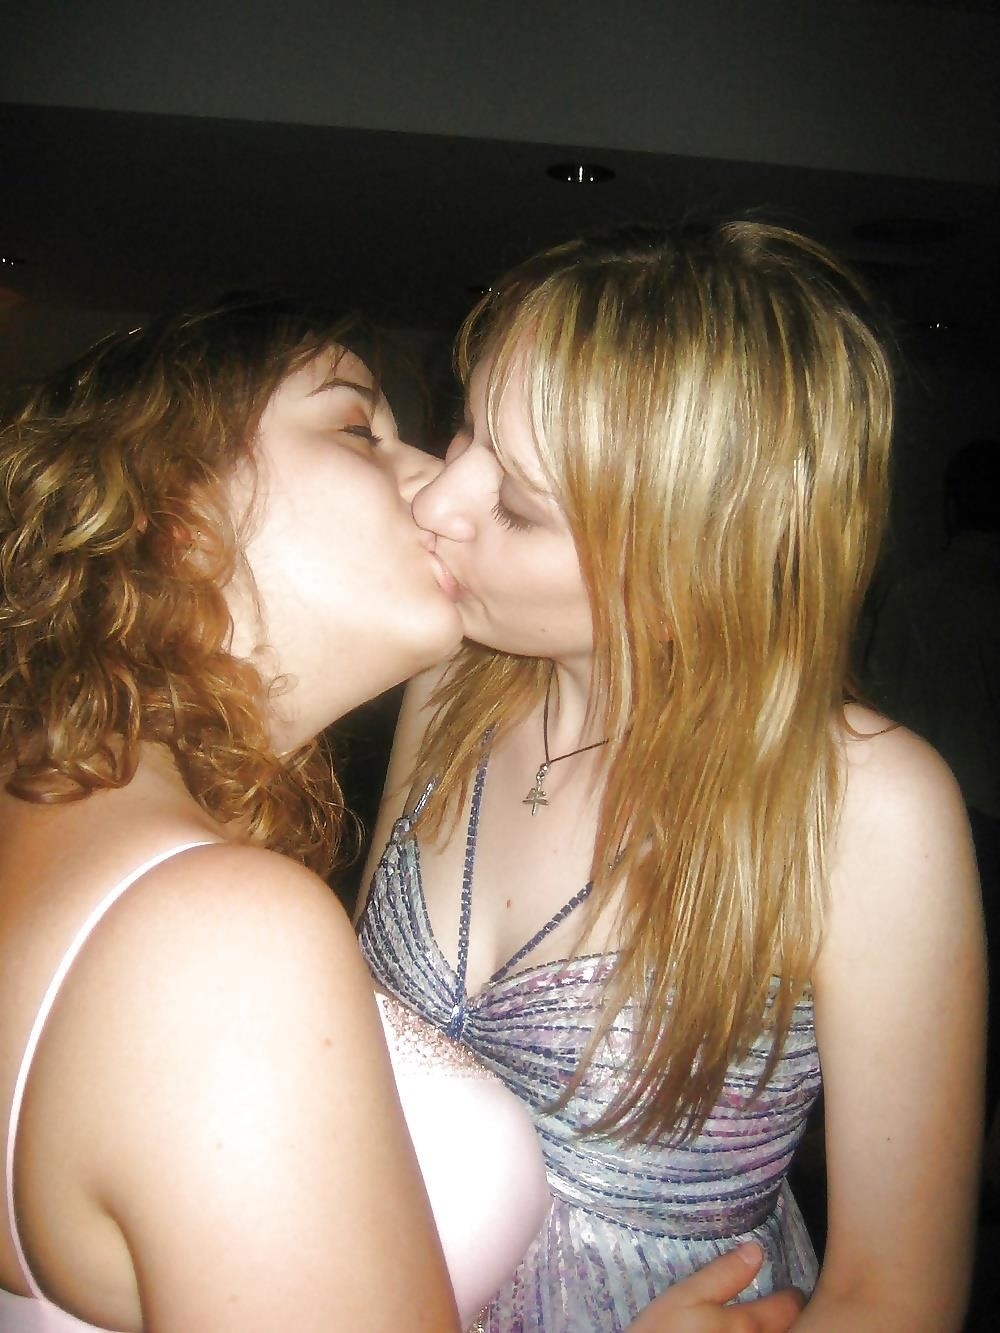 Girl on girl kissing hot-6463